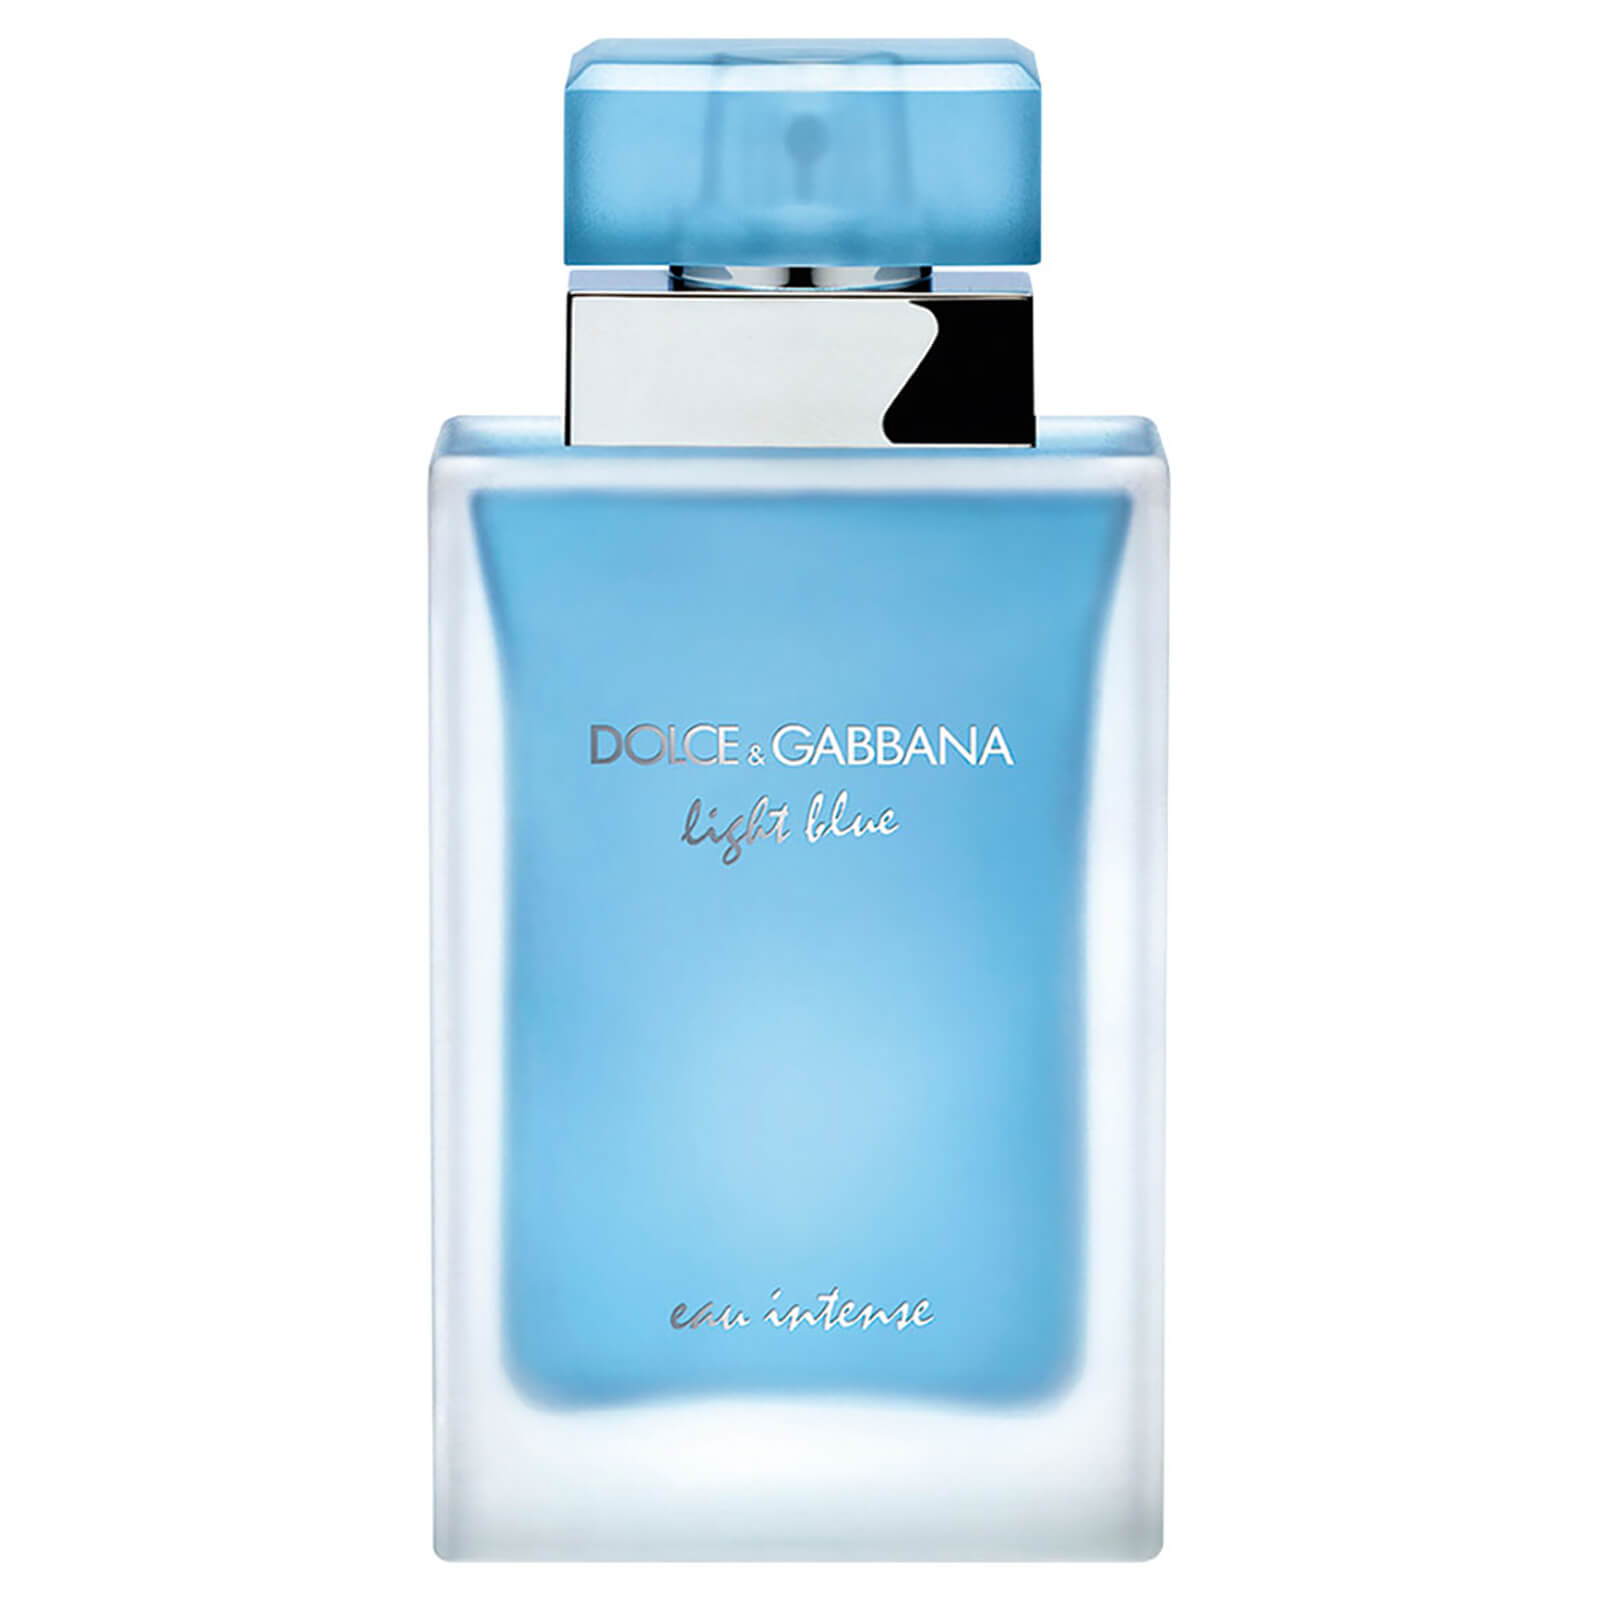 dolce and gabbana light blue eau intense for men